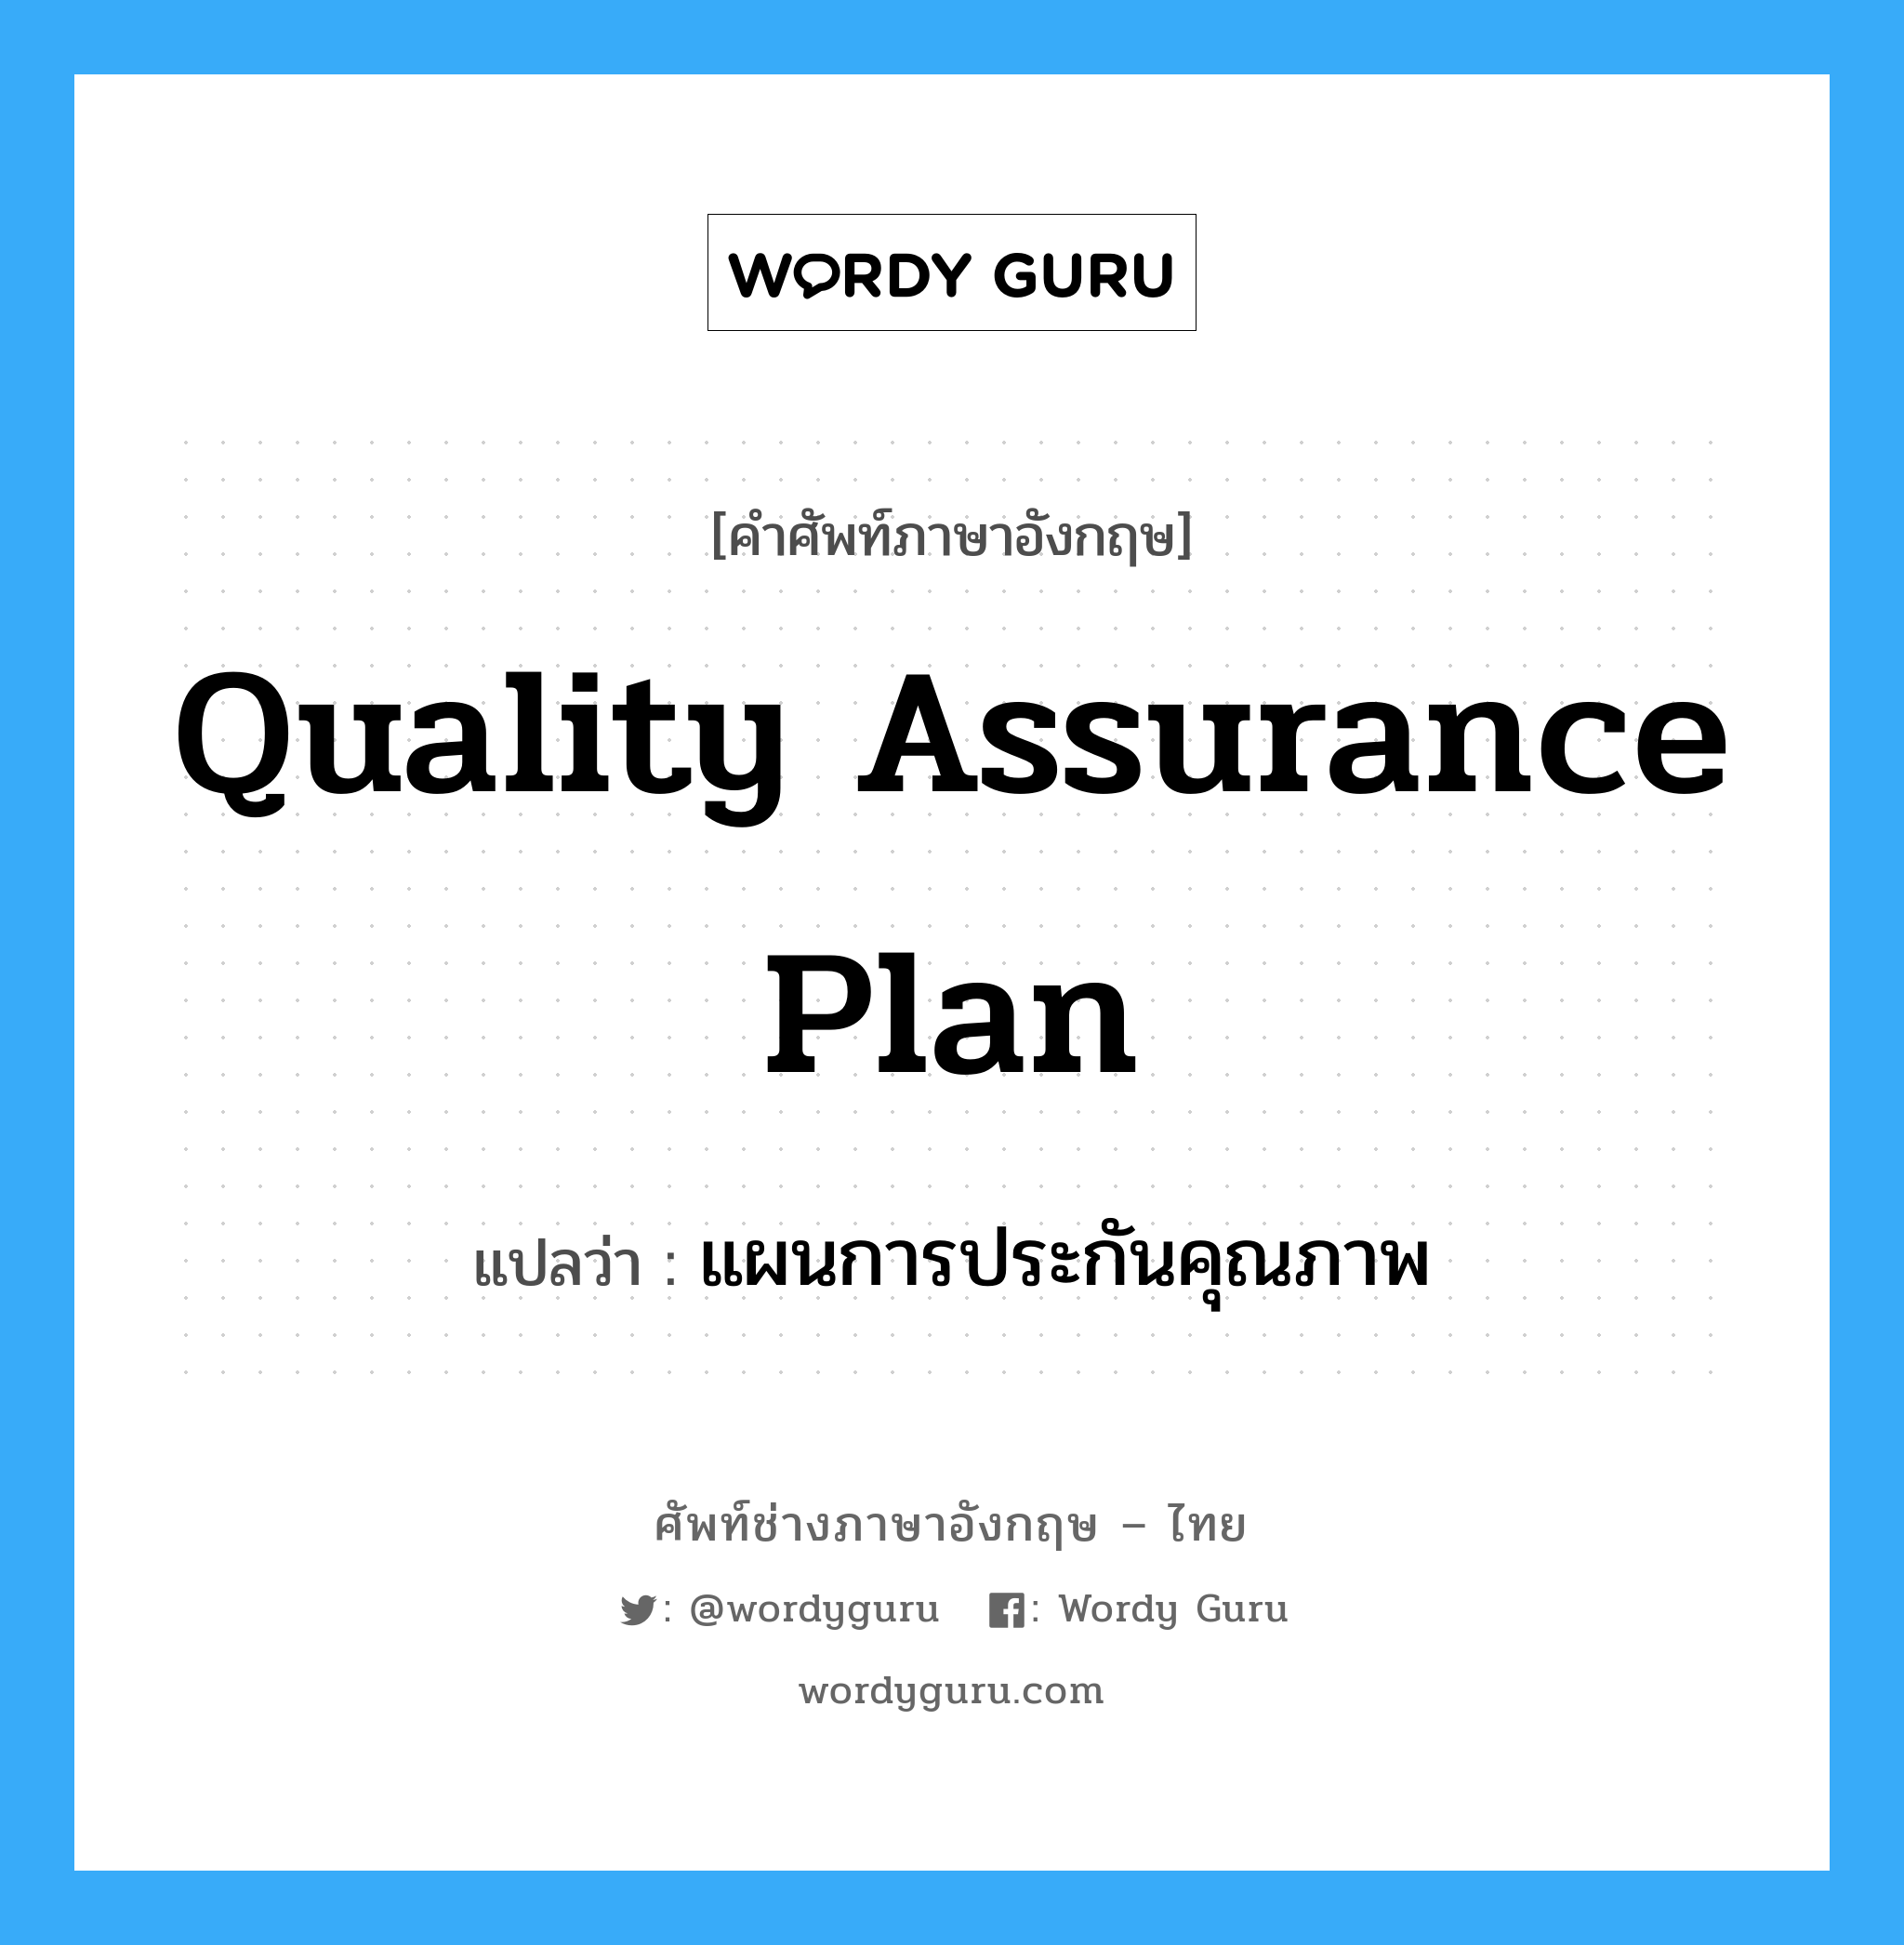 แผนการประกันคุณภาพ ภาษาอังกฤษ?, คำศัพท์ช่างภาษาอังกฤษ - ไทย แผนการประกันคุณภาพ คำศัพท์ภาษาอังกฤษ แผนการประกันคุณภาพ แปลว่า Quality Assurance Plan